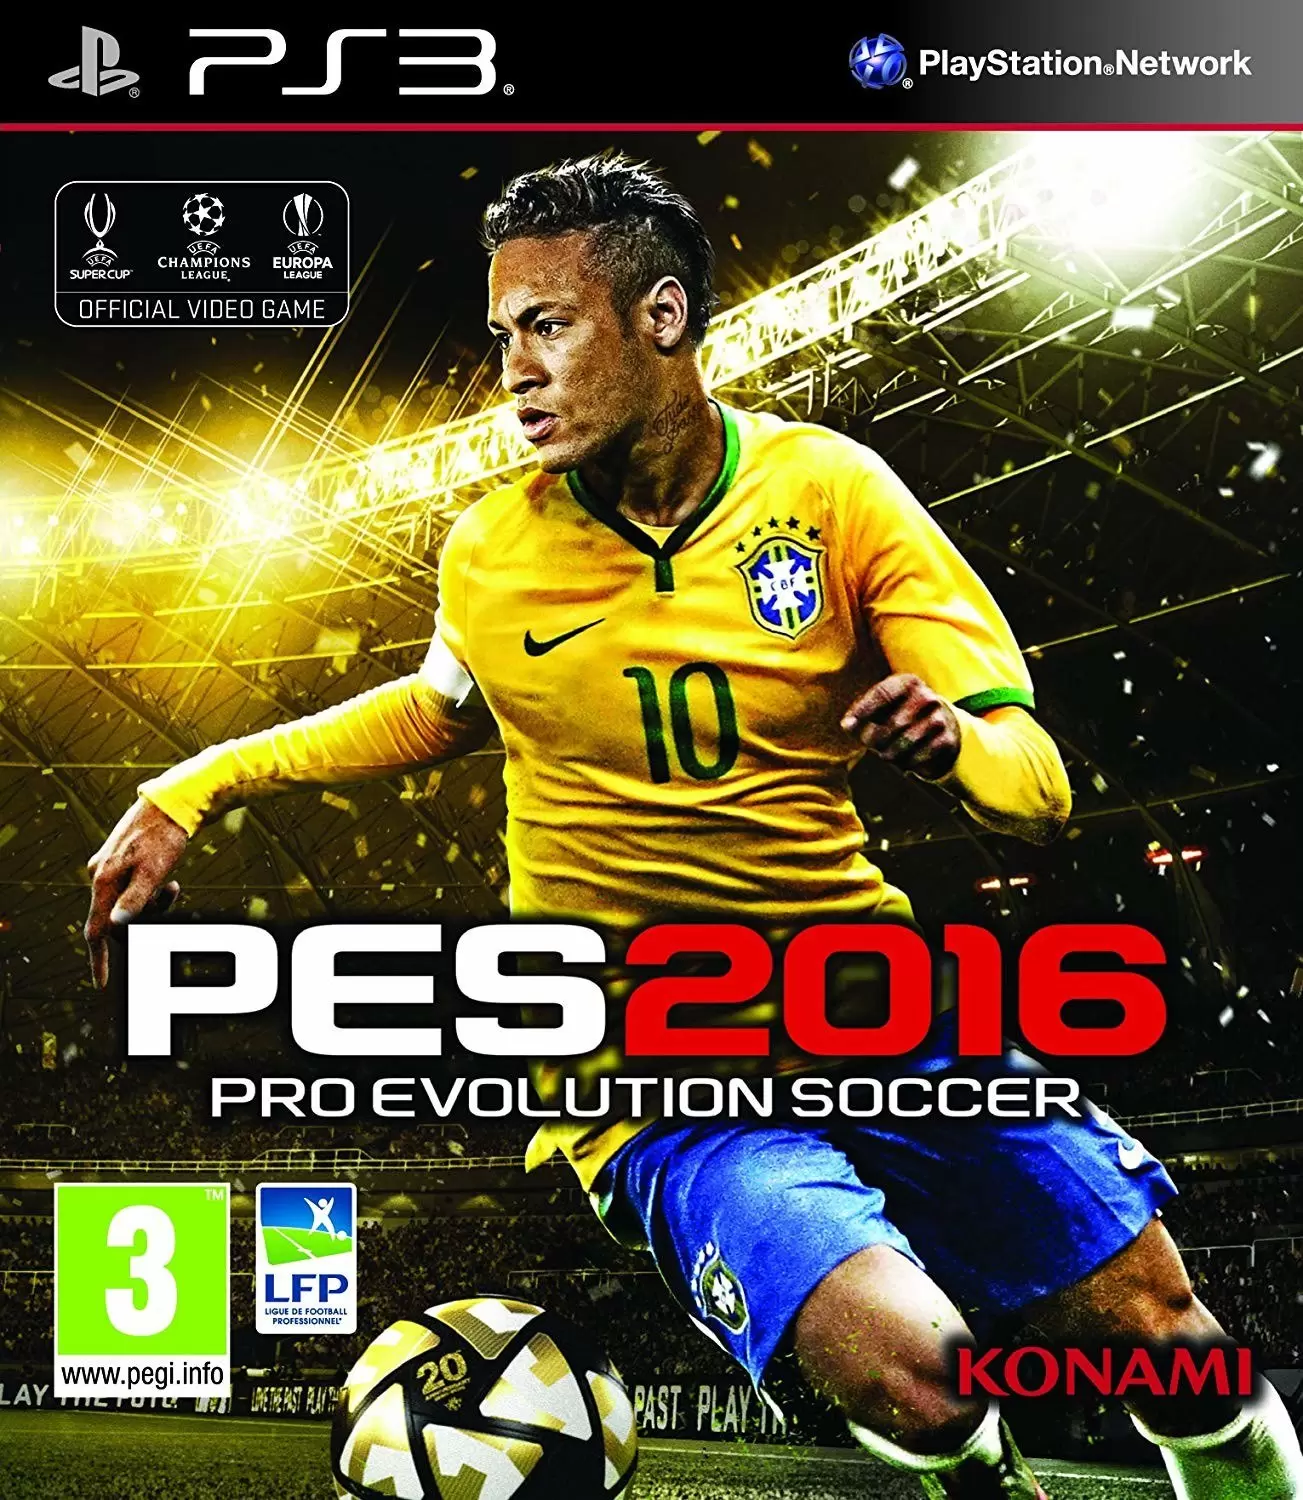 PS3 Games - Pro Evolution Soccer 2016